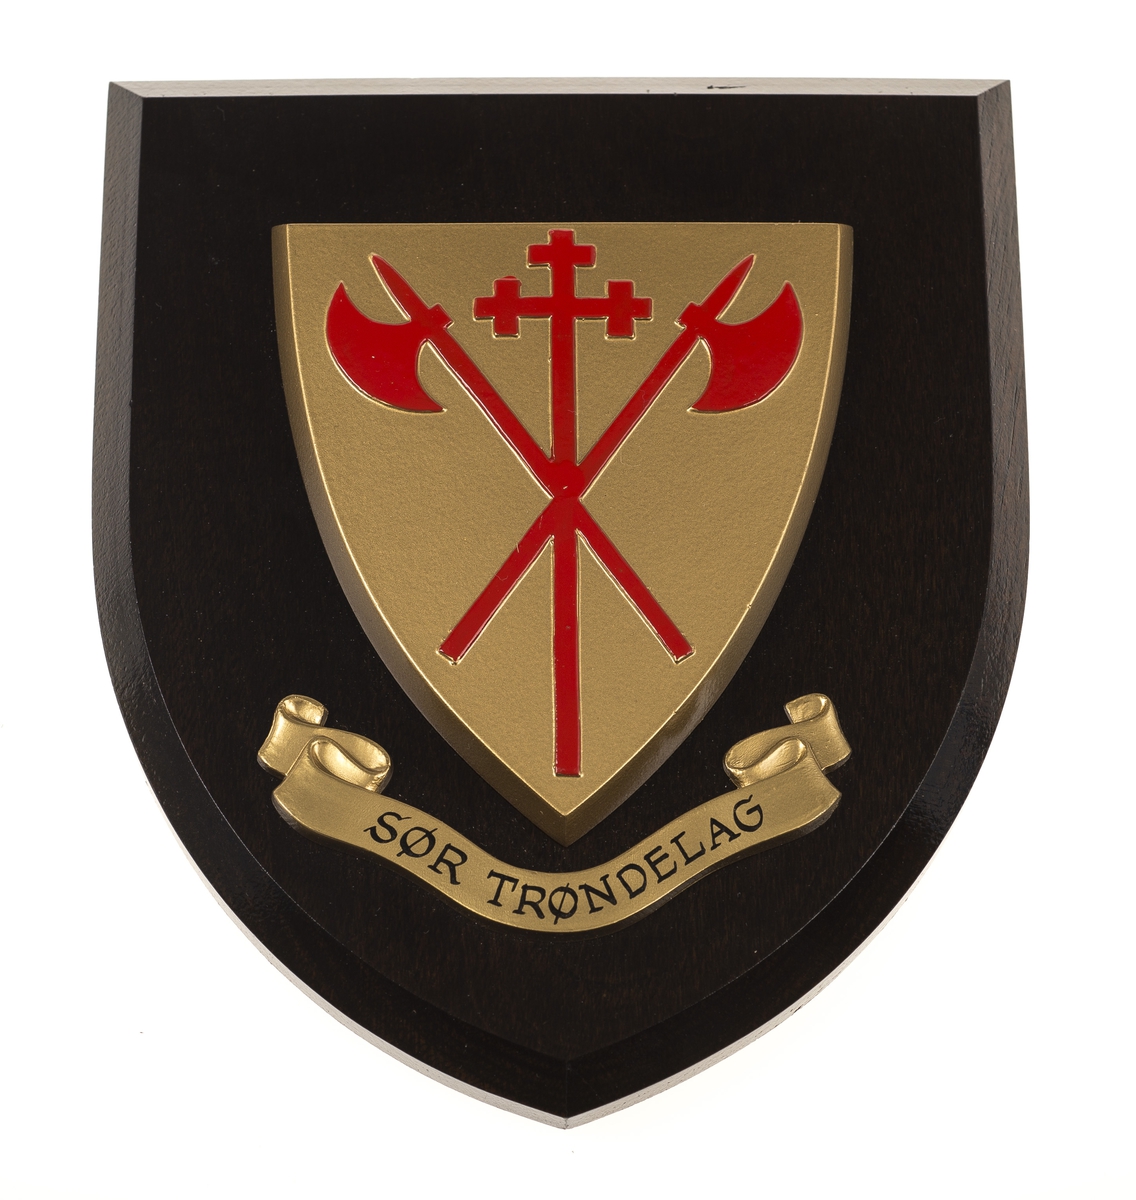 Sør- Trøndelags fylkesvåpen for oppheng på vegg. Fylkesvåpenet har to korslagte røde økser belagt med en rød korsstav mot en gull bakgrunn; gjengir erkestolens våpen 1475–1510.